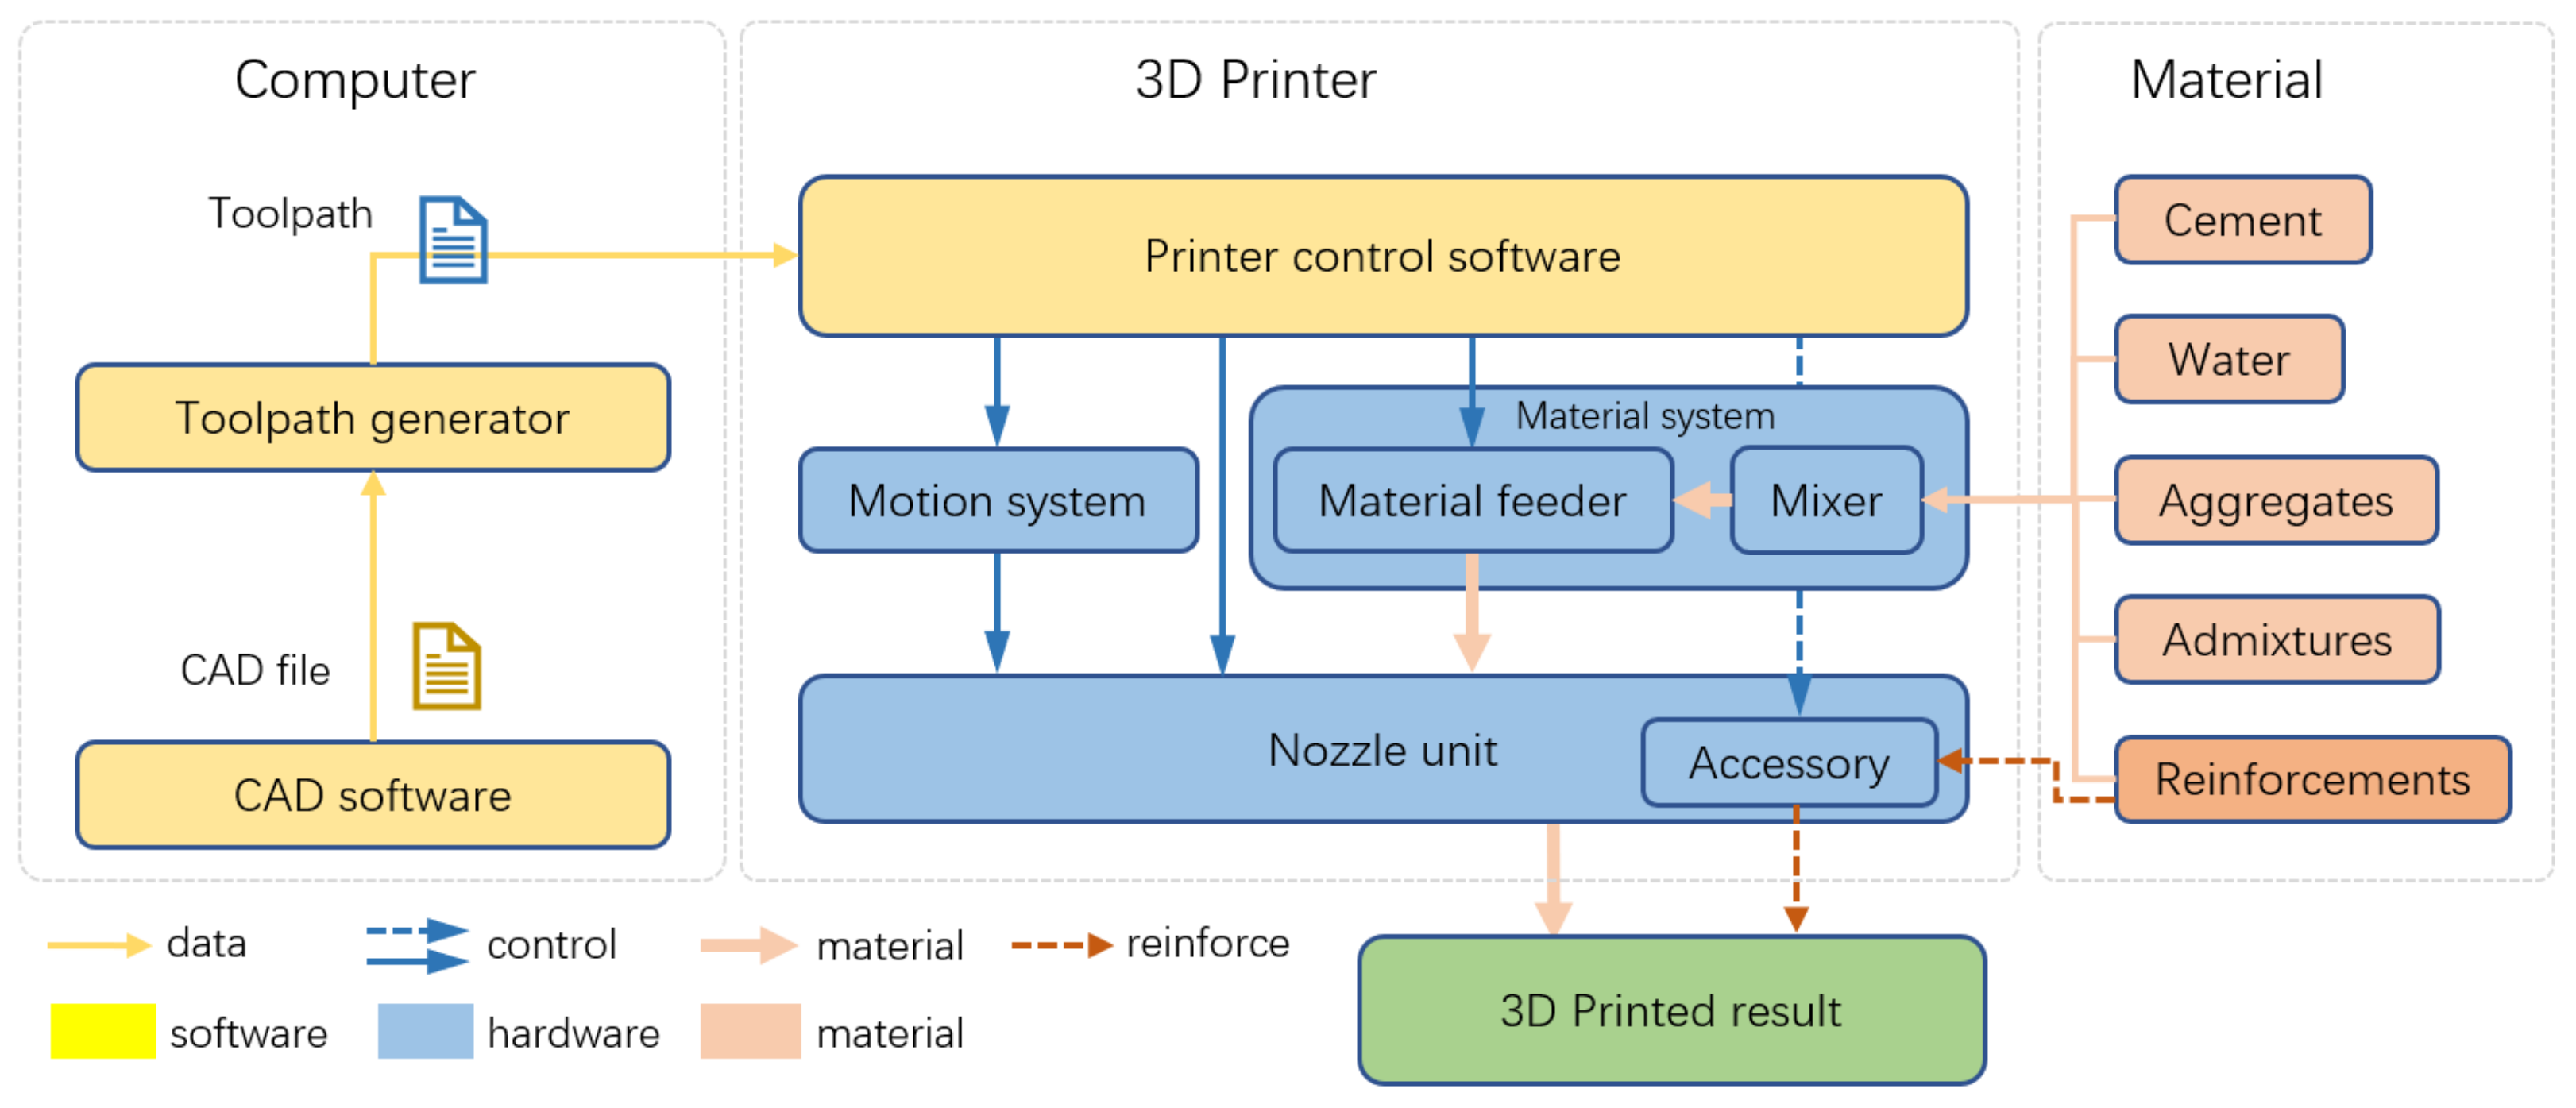 Ultimate 3D Printer Nozzle Comparison